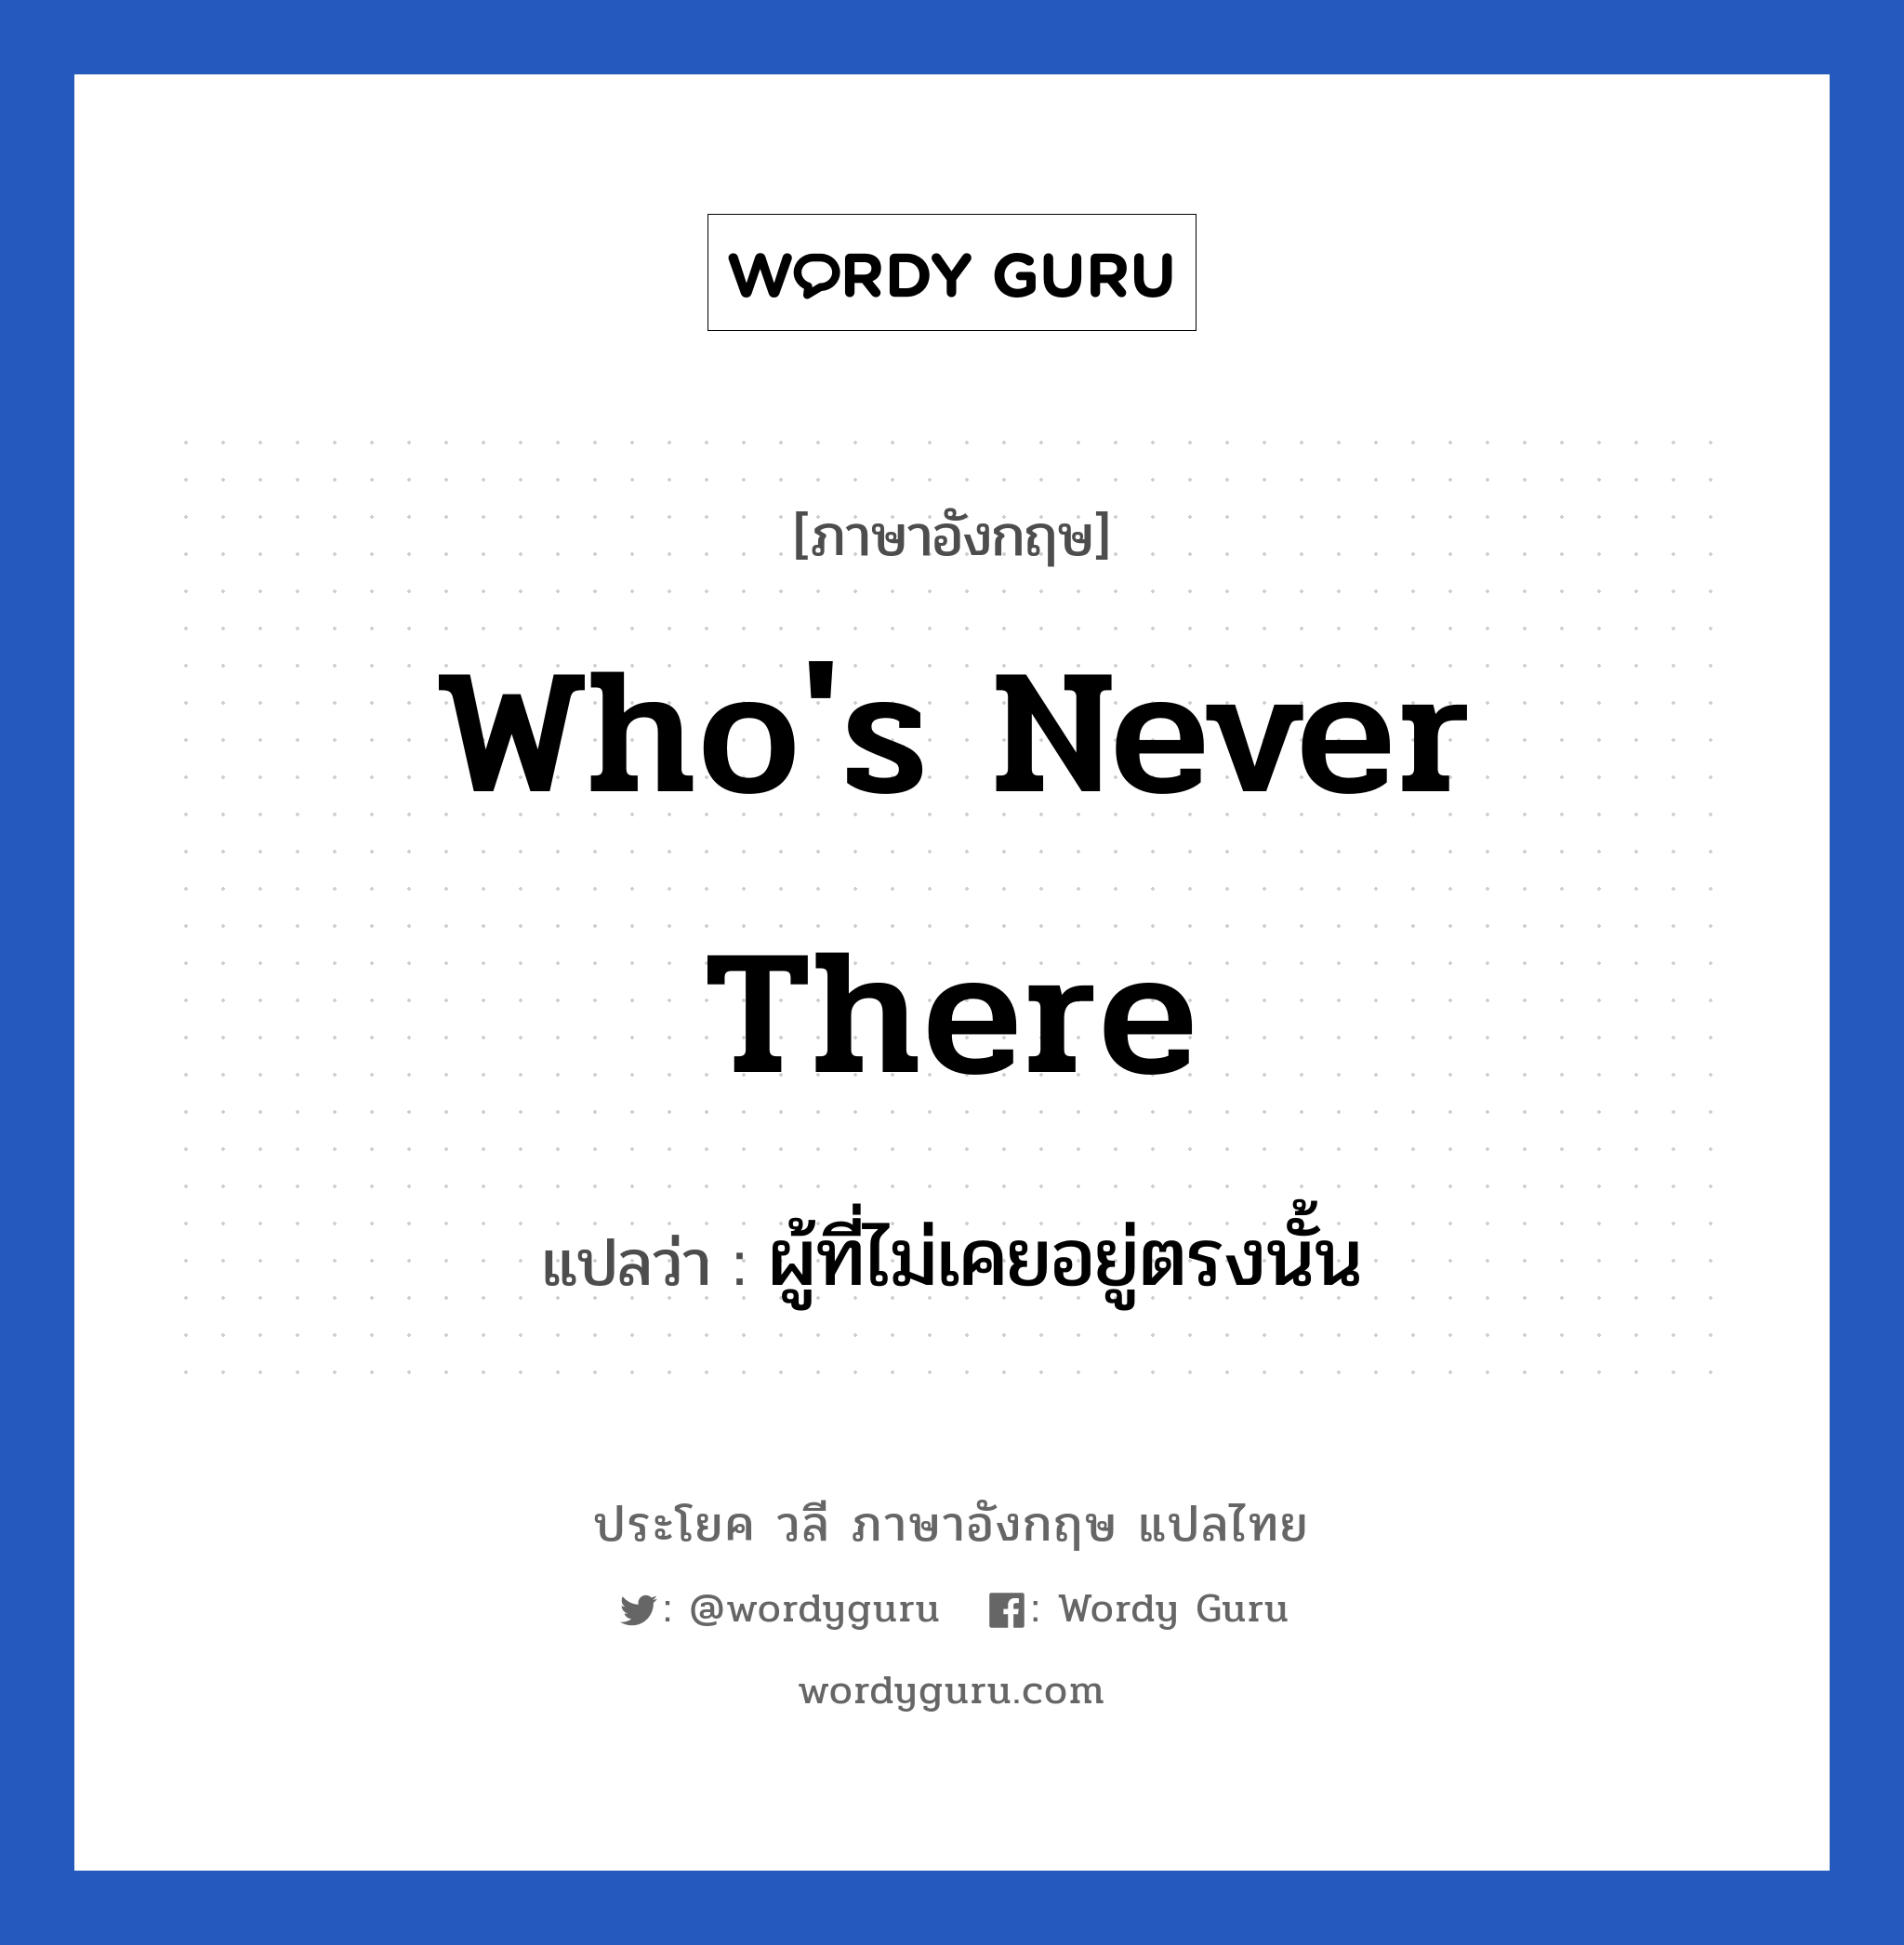 Who's never there แปลว่า?, วลีภาษาอังกฤษ Who's never there แปลว่า ผู้ที่ไม่เคยอยู่ตรงนั้น